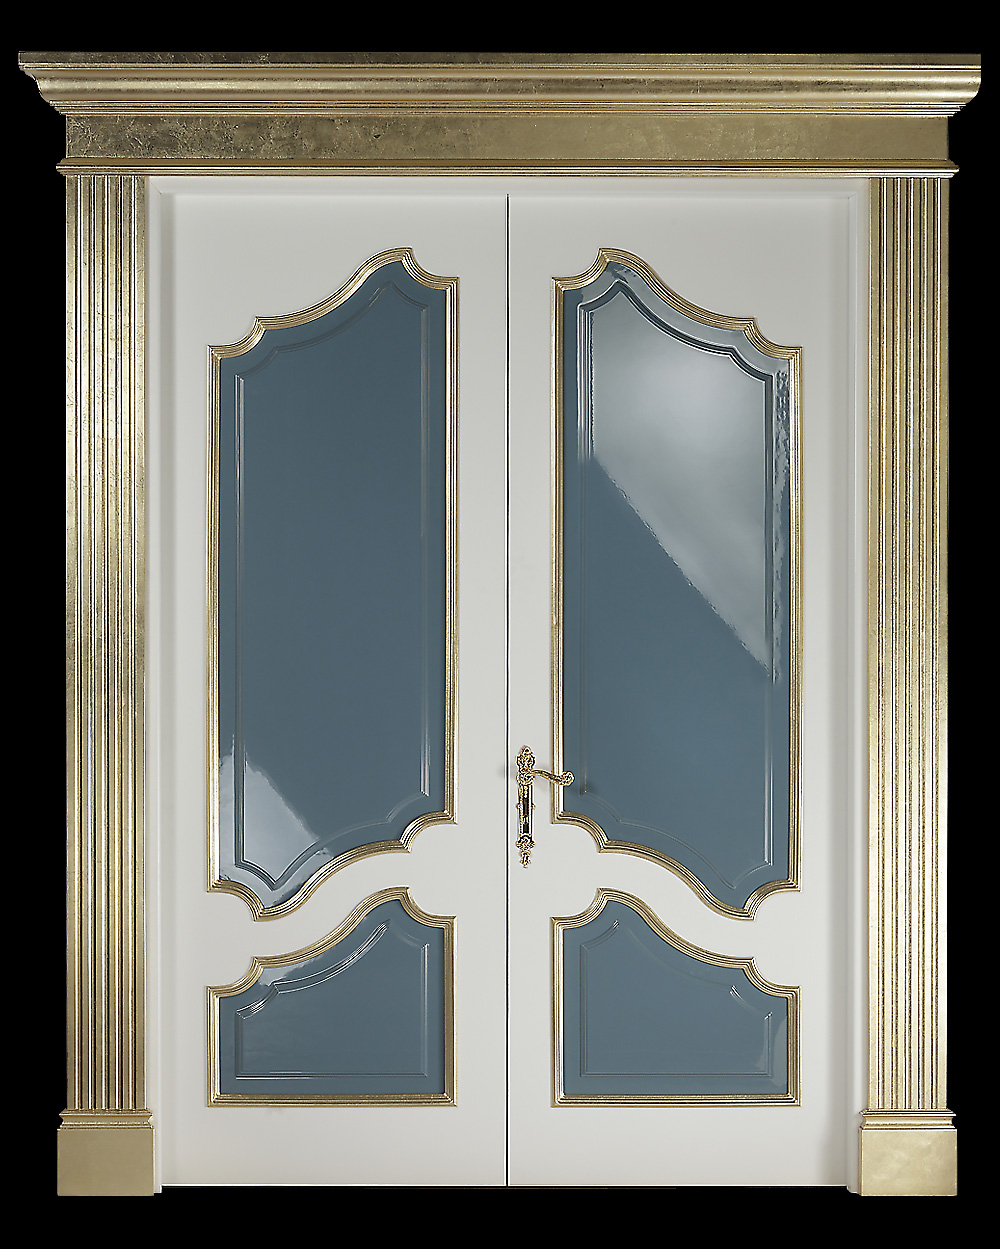 Дверь, стиль классический, дизайн Sige Gold, модель Collector Collection CO 512BP.1A.J2